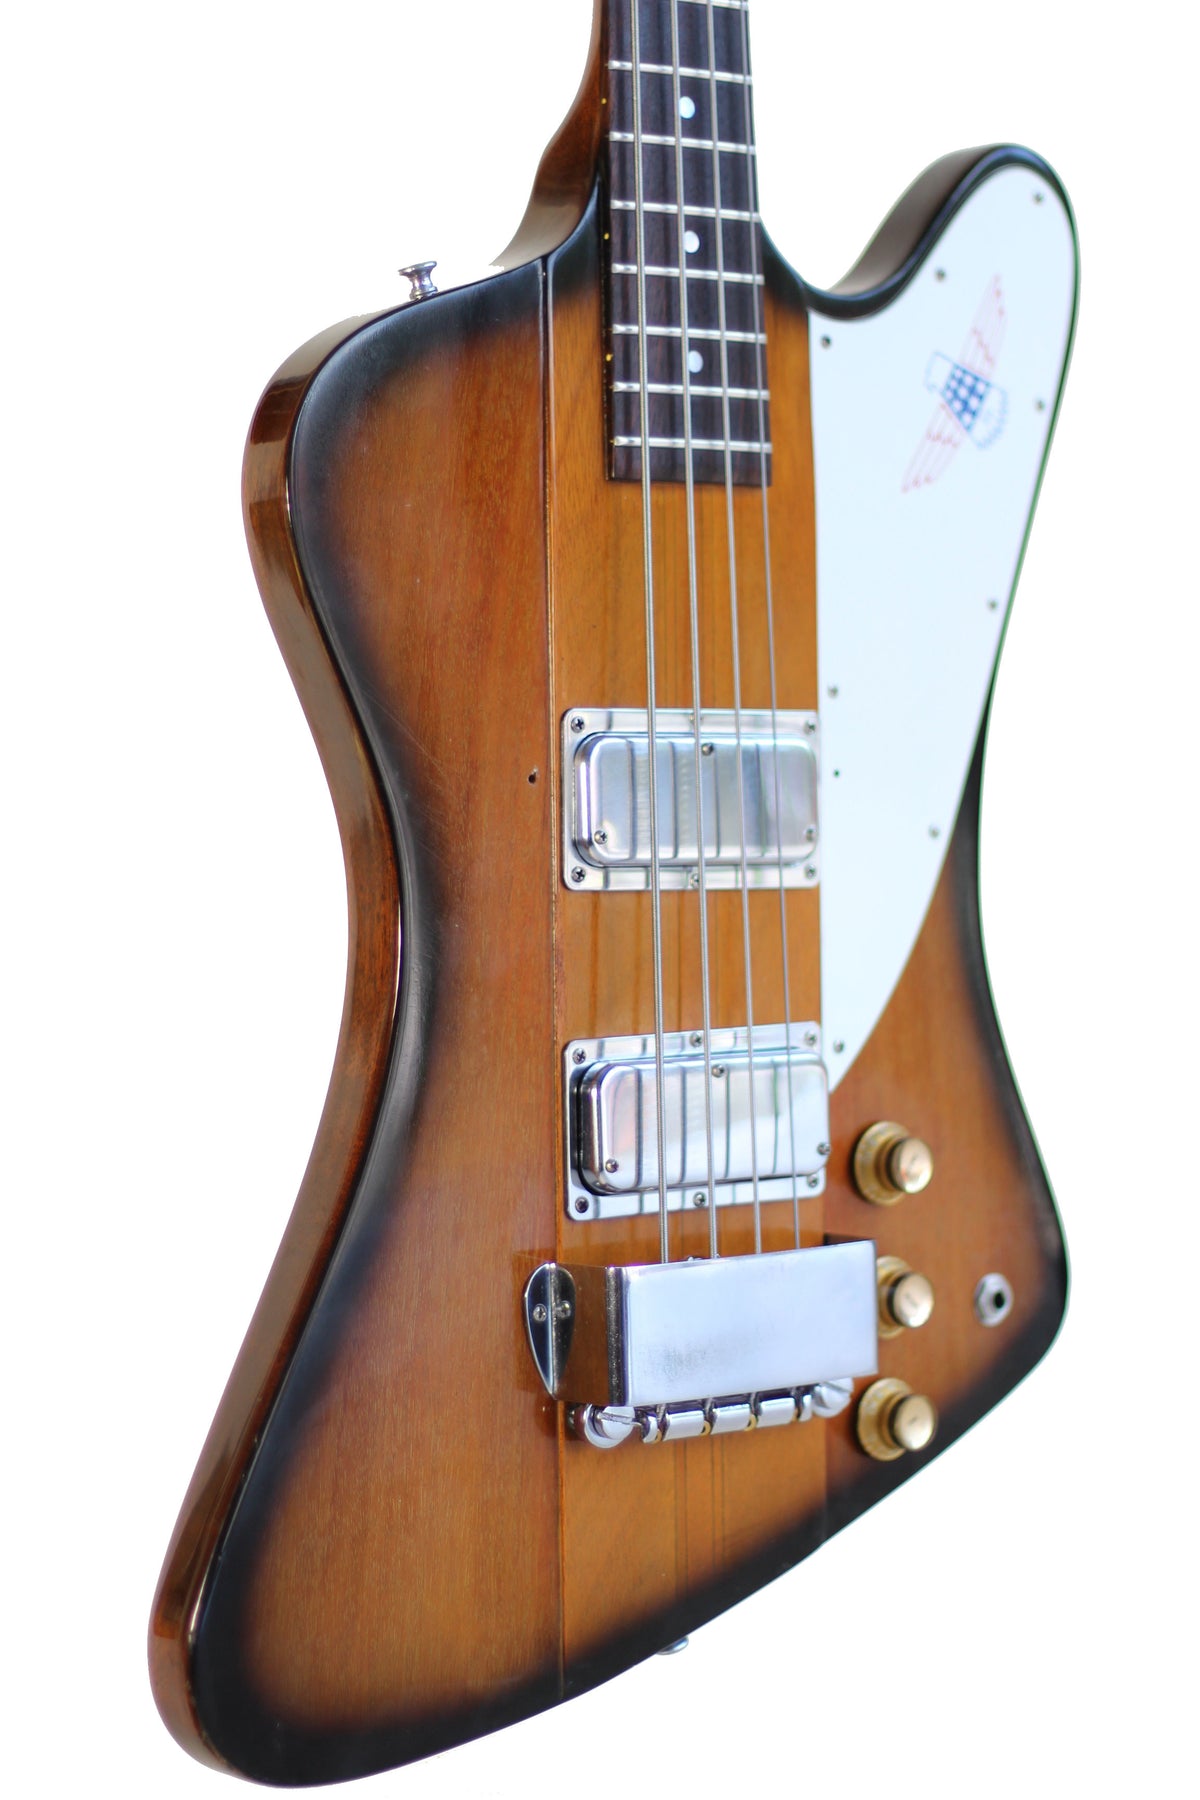 1979 gibson thunderbird guitar